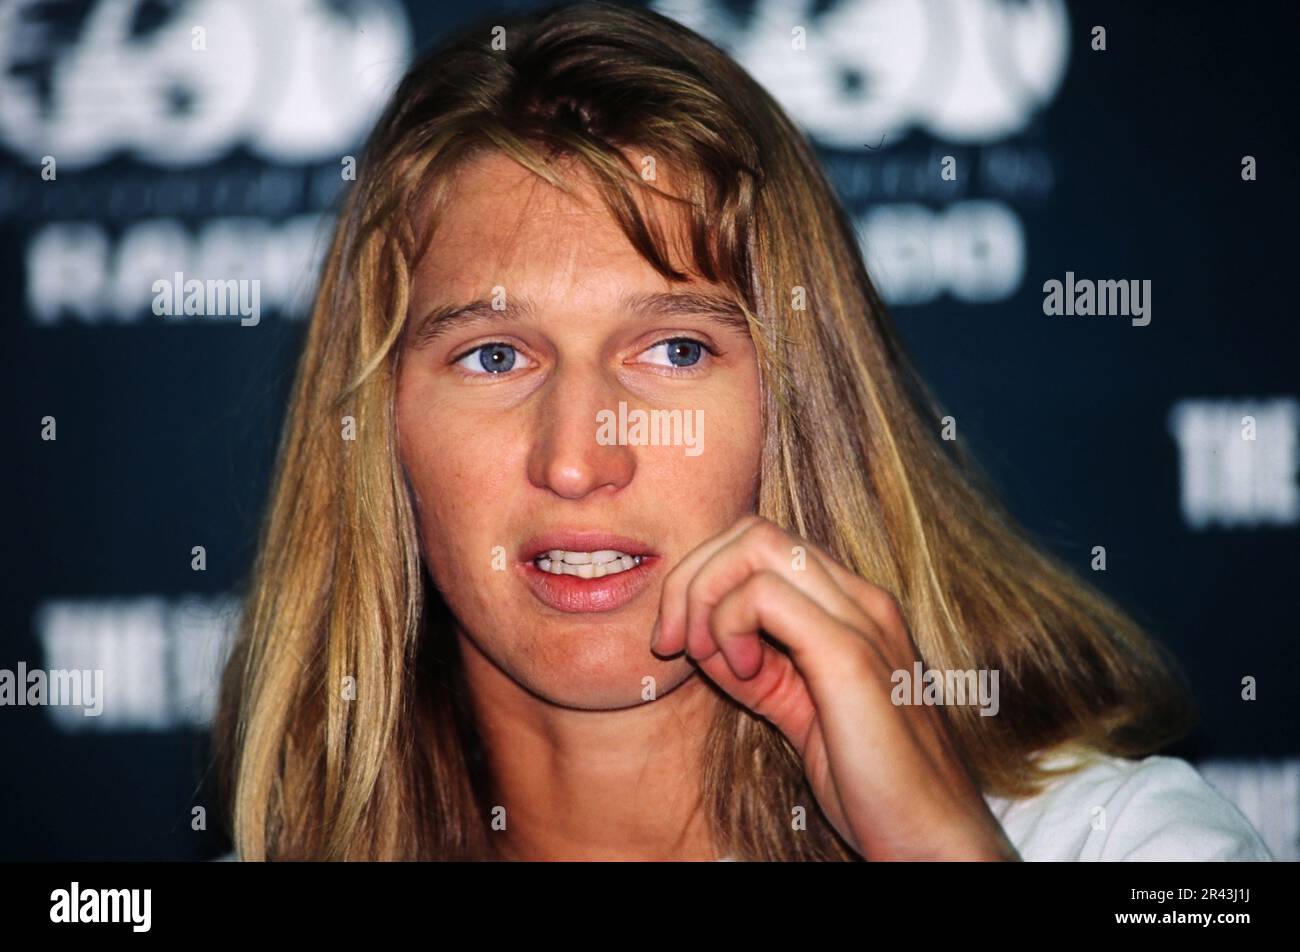 Stefanie Steffi Graf, deutsche Tennisspielerin, Porträt bei einer Pressekonferenz. Stockfoto